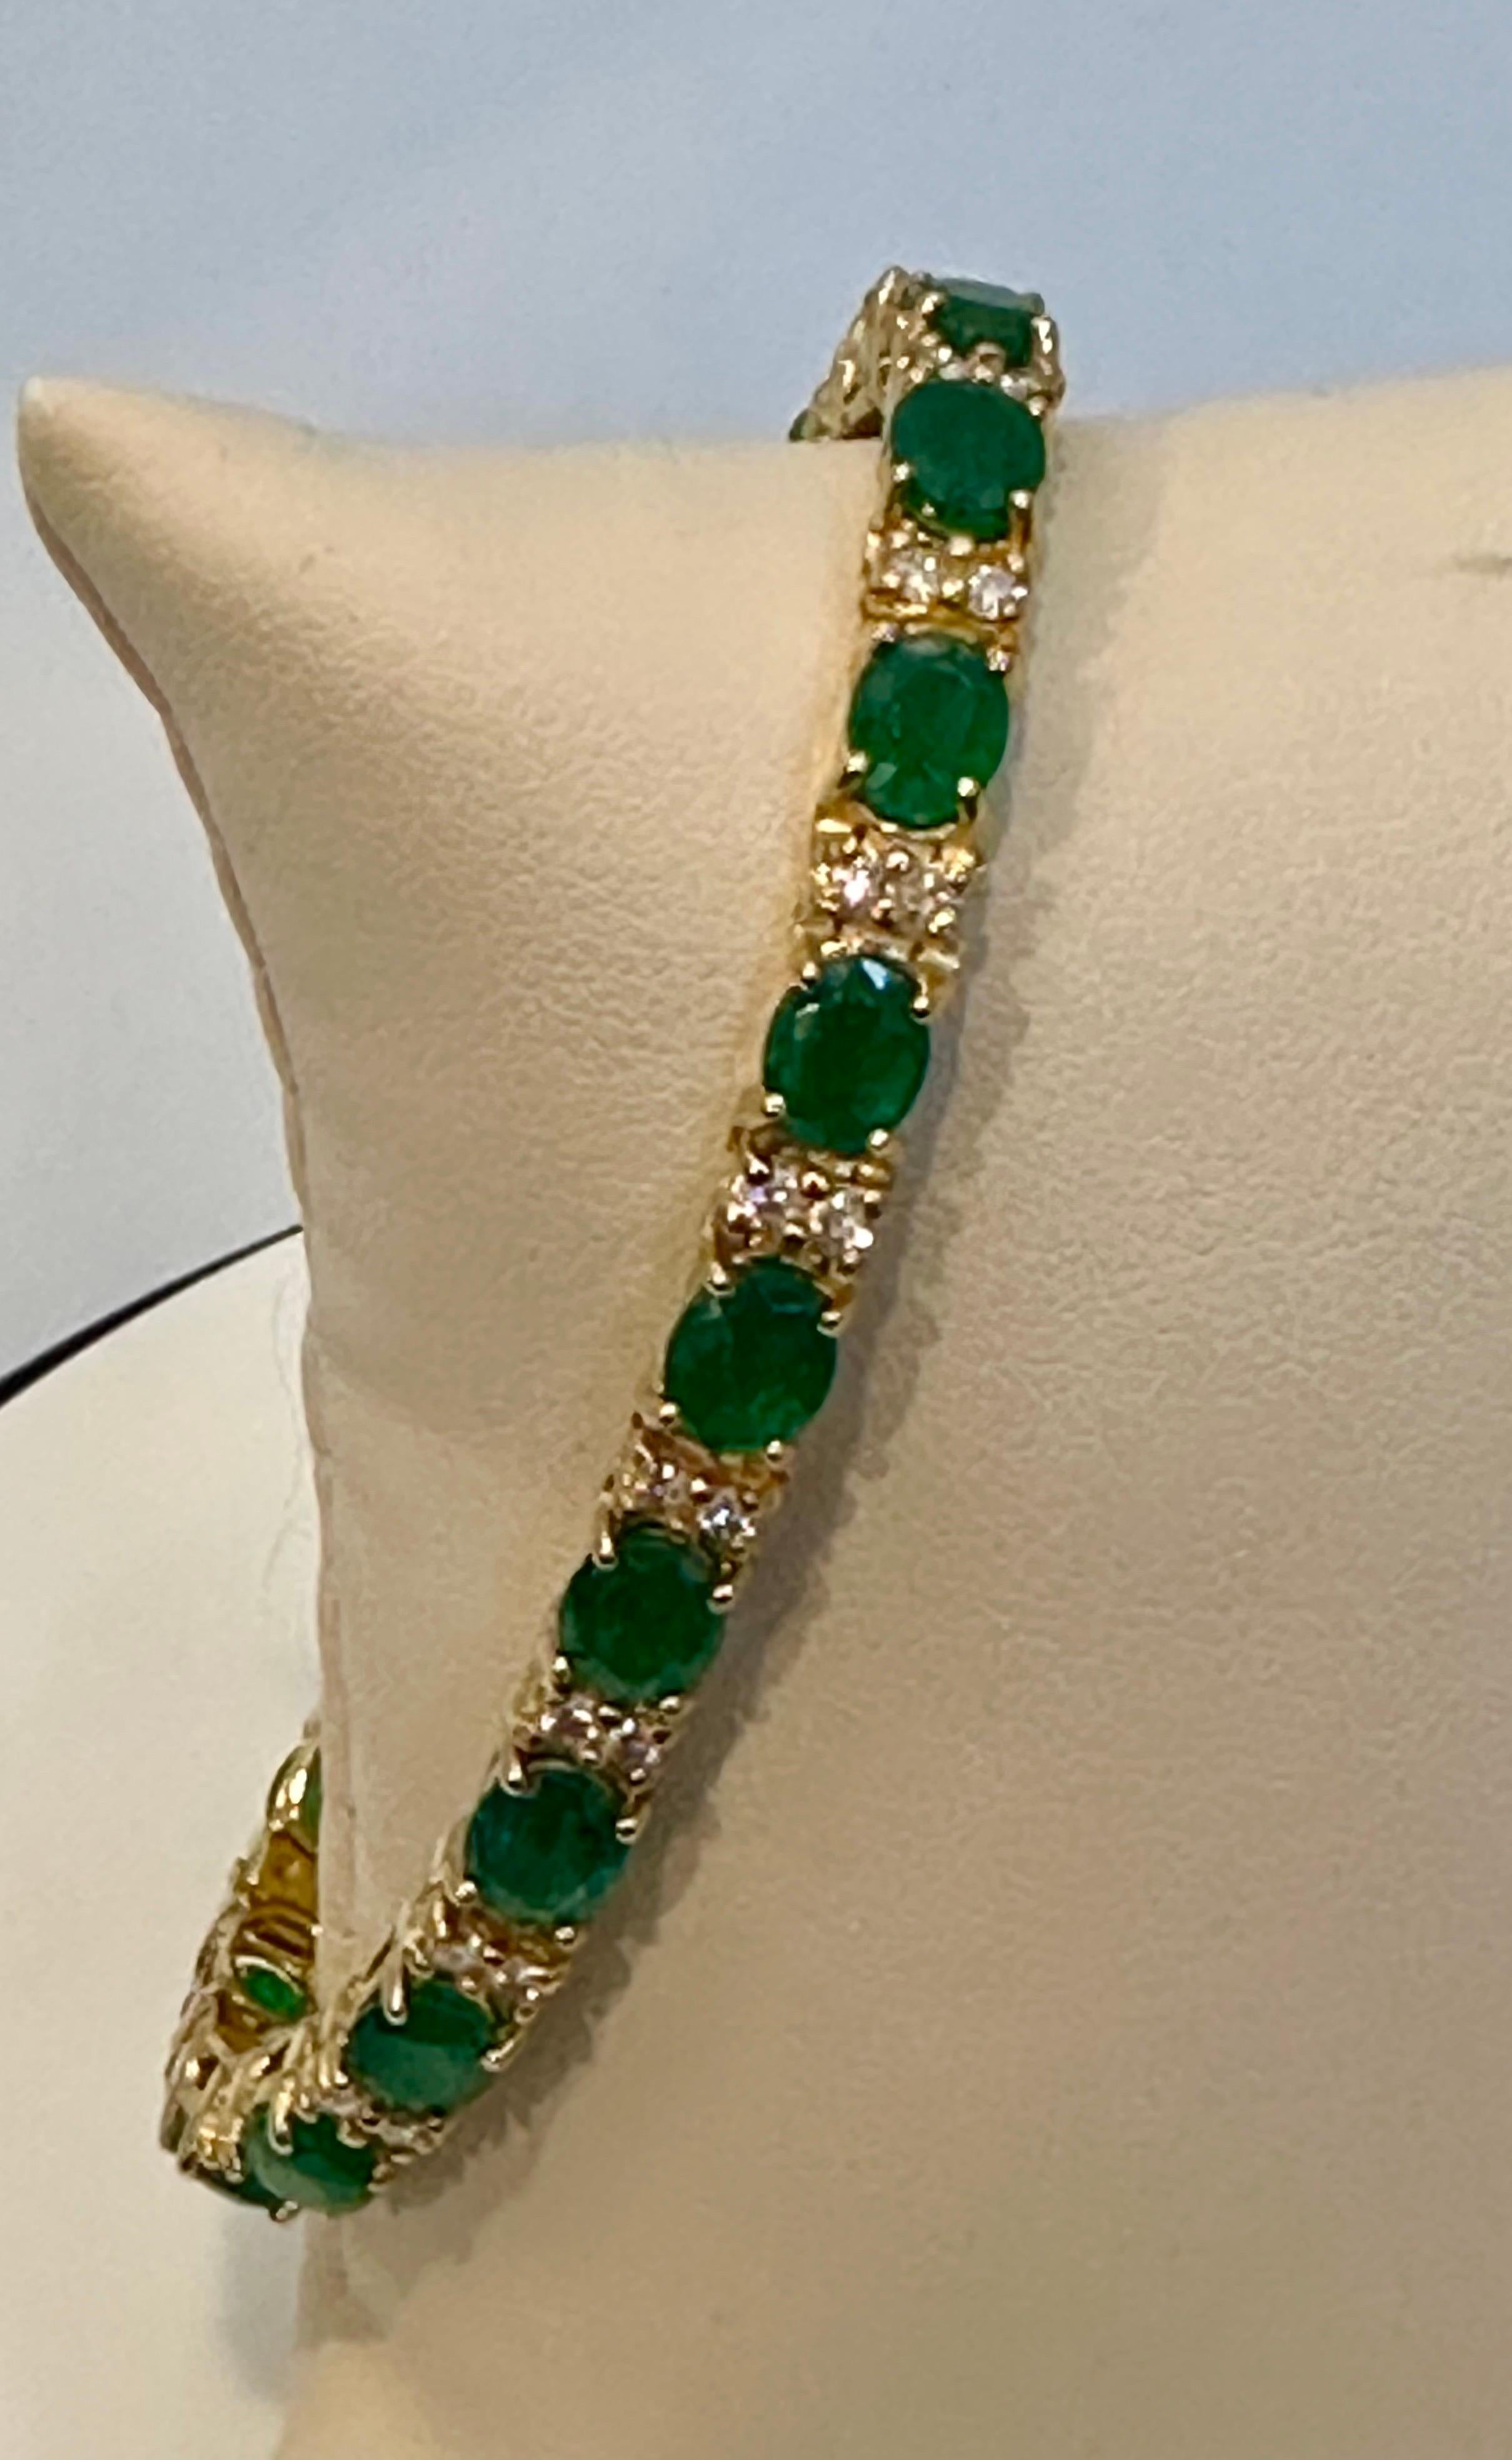 13 Carat Natural Emerald & Diamond Cocktail Tennis Bracelet 14 Karat Yellow Gold 12